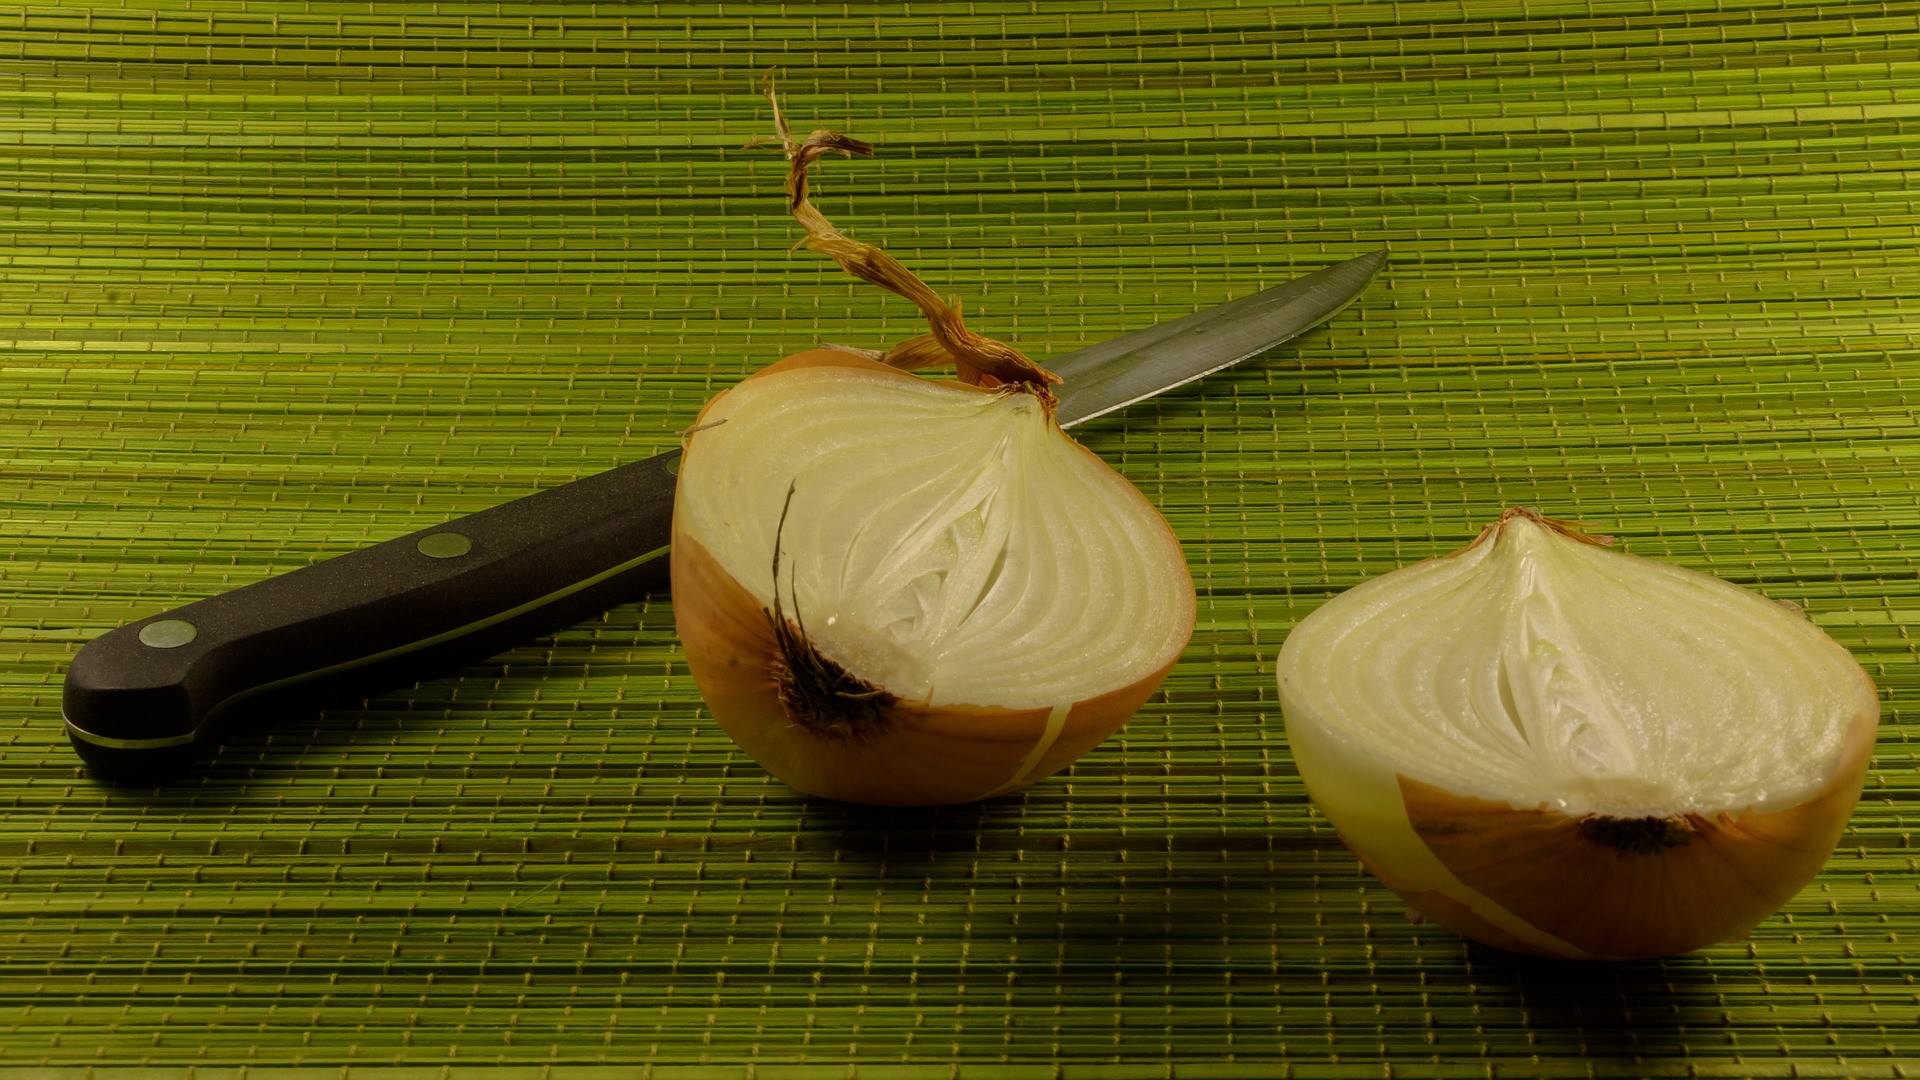 Chop those onions!